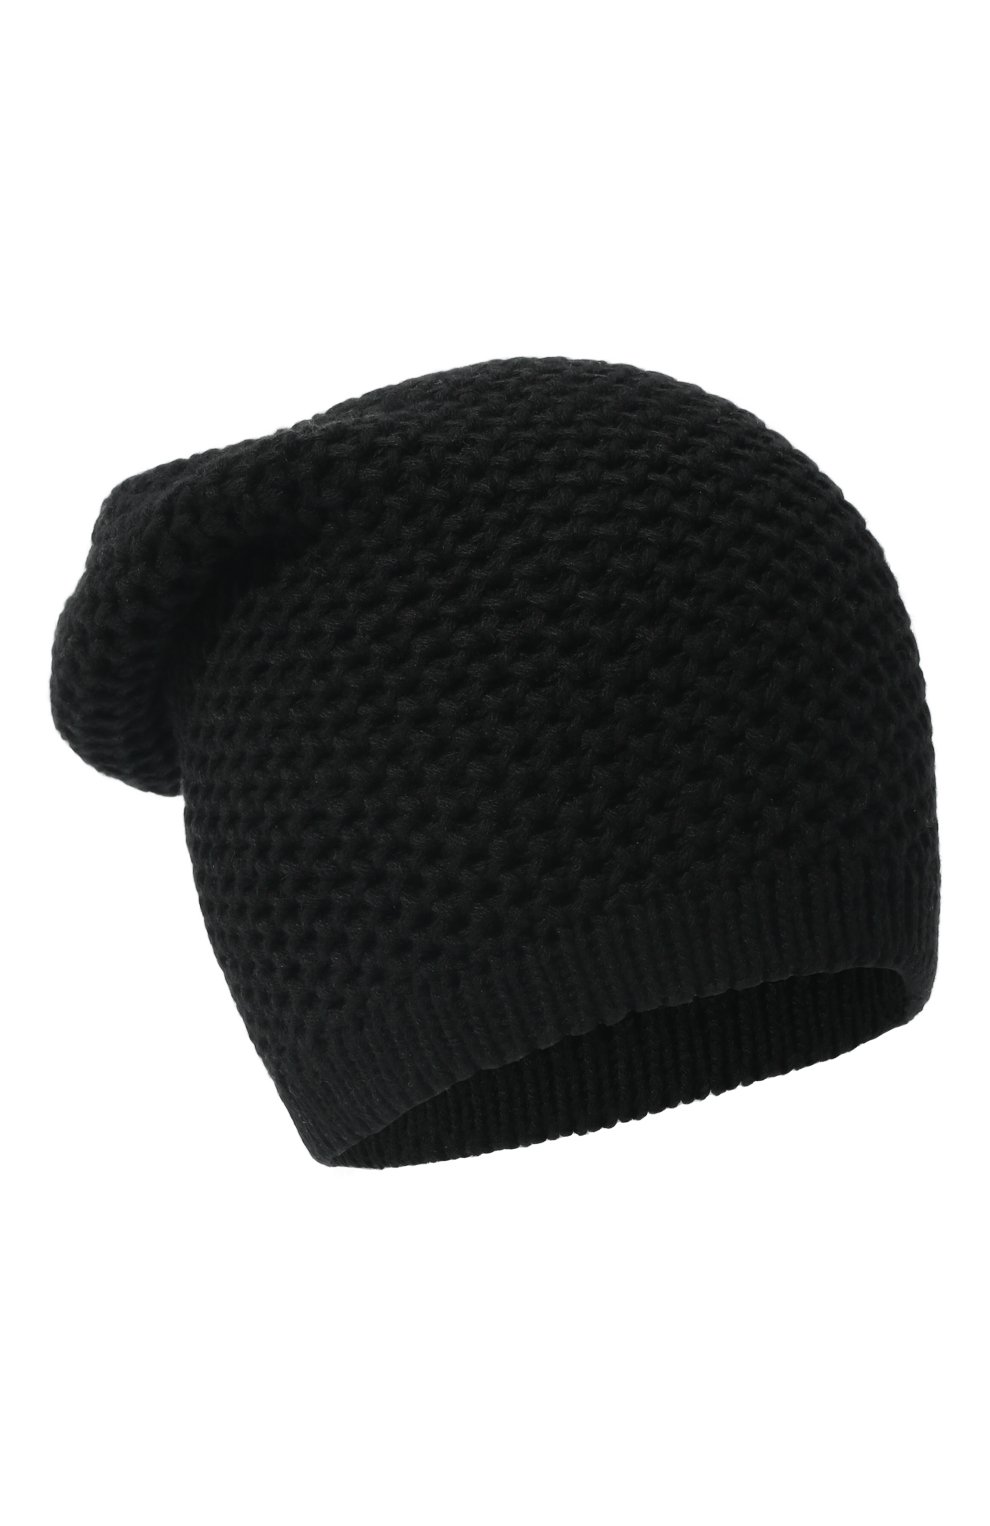 Женская кашемировая шапка INVERNI черного цвета, арт. 0097 CMG8 | Фото 1 (Материал: Текстиль, Кашемир, Шерсть)